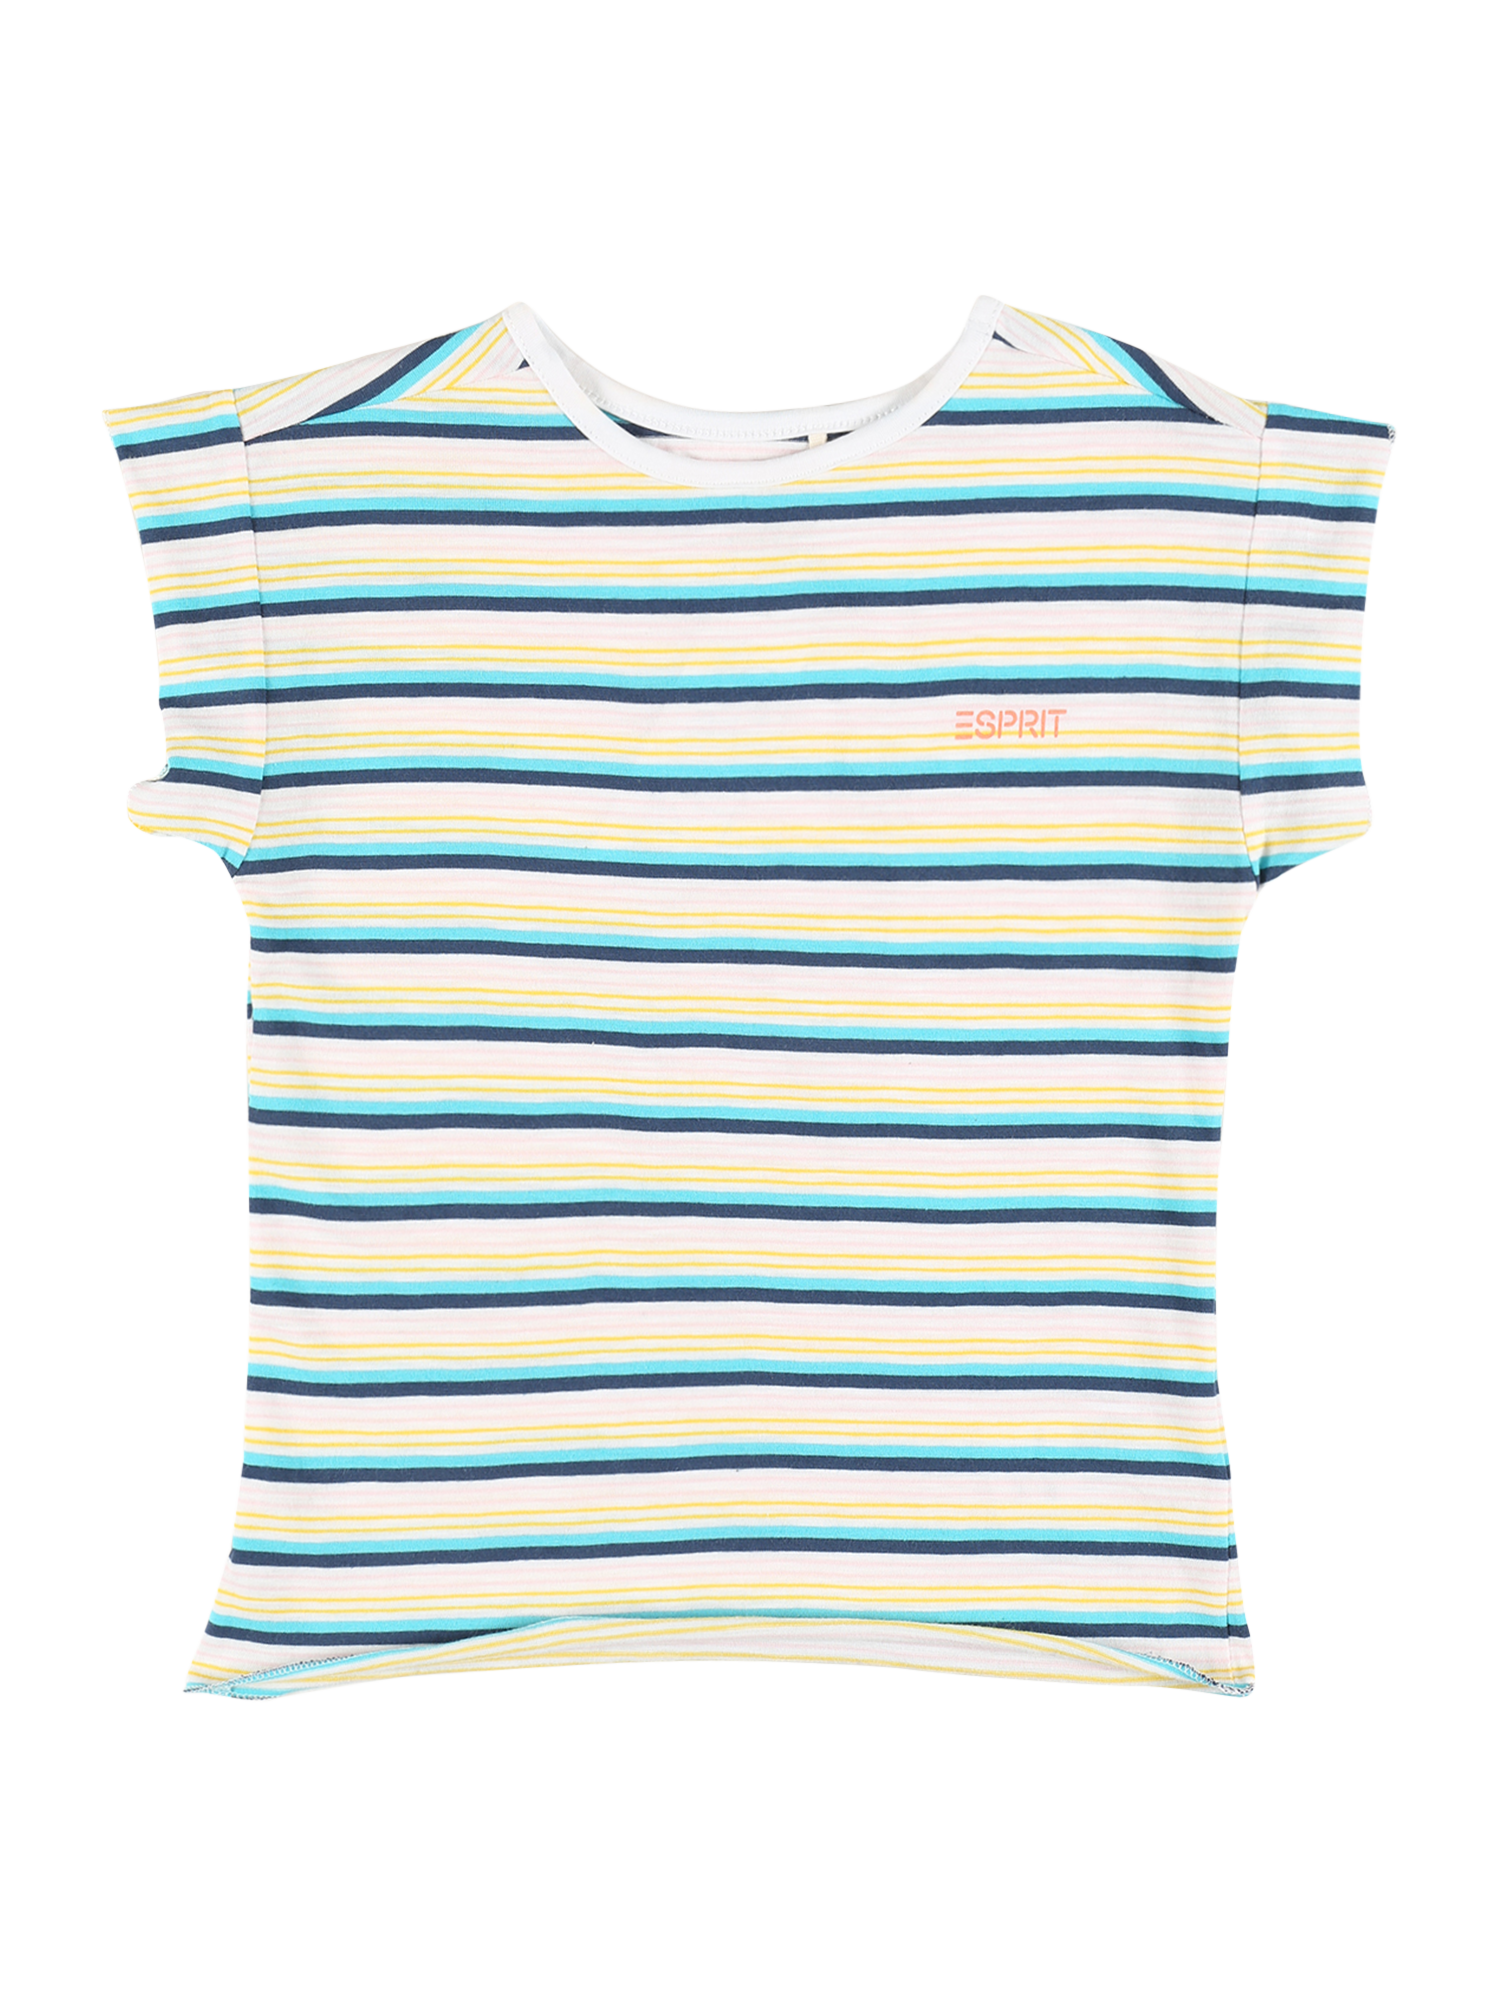 Dzieci (92-140 cm) zG9Mv ESPRIT T-Shirt w kolorze Niebieska Noc, Jasnoniebieskim 